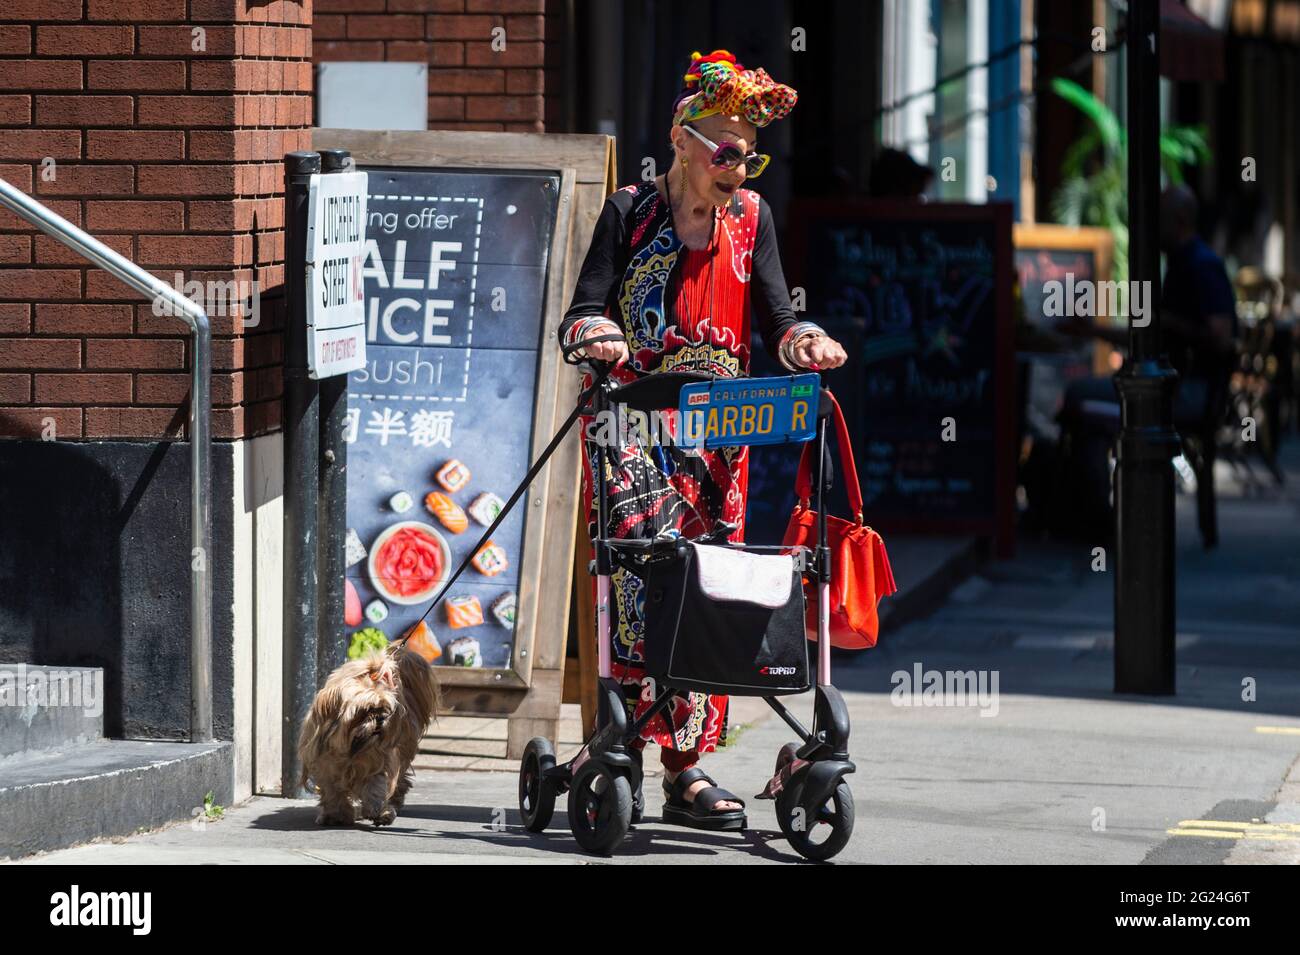 Londres, Royaume-Uni. 8 juin 2021. Météo au Royaume-Uni - une femme élégamment habillée marche son chien près de Cambridge Circus lors d'un après-midi chaud et ensoleillé, lorsque les températures ont augmenté à 25 °C dans la capitale. Credit: Stephen Chung / Alamy Live News Banque D'Images